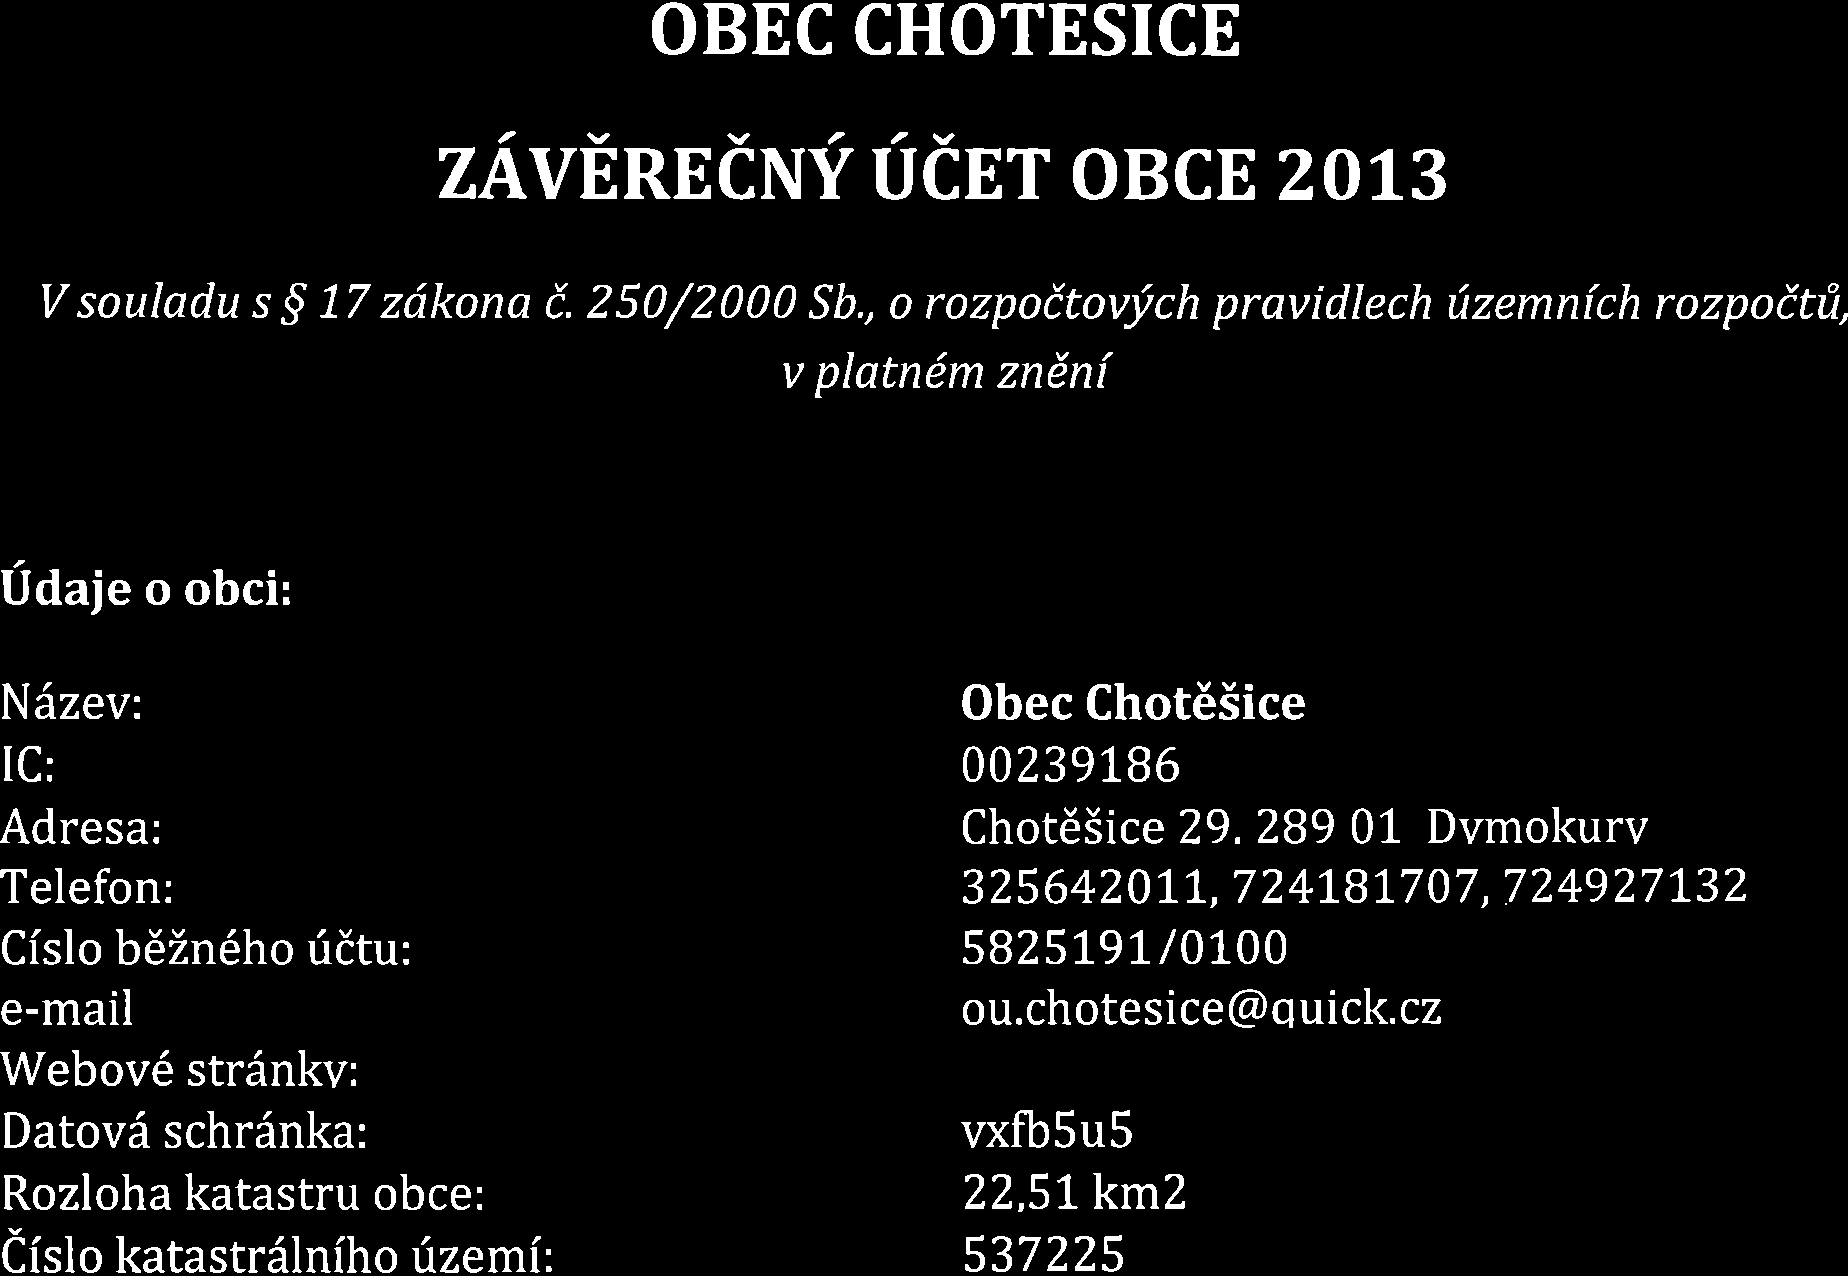 OBEC CHOTESICE zavnnecruf ucer obce zolg V souladu s 5 17 zdkona i. 250/2000 Sb.